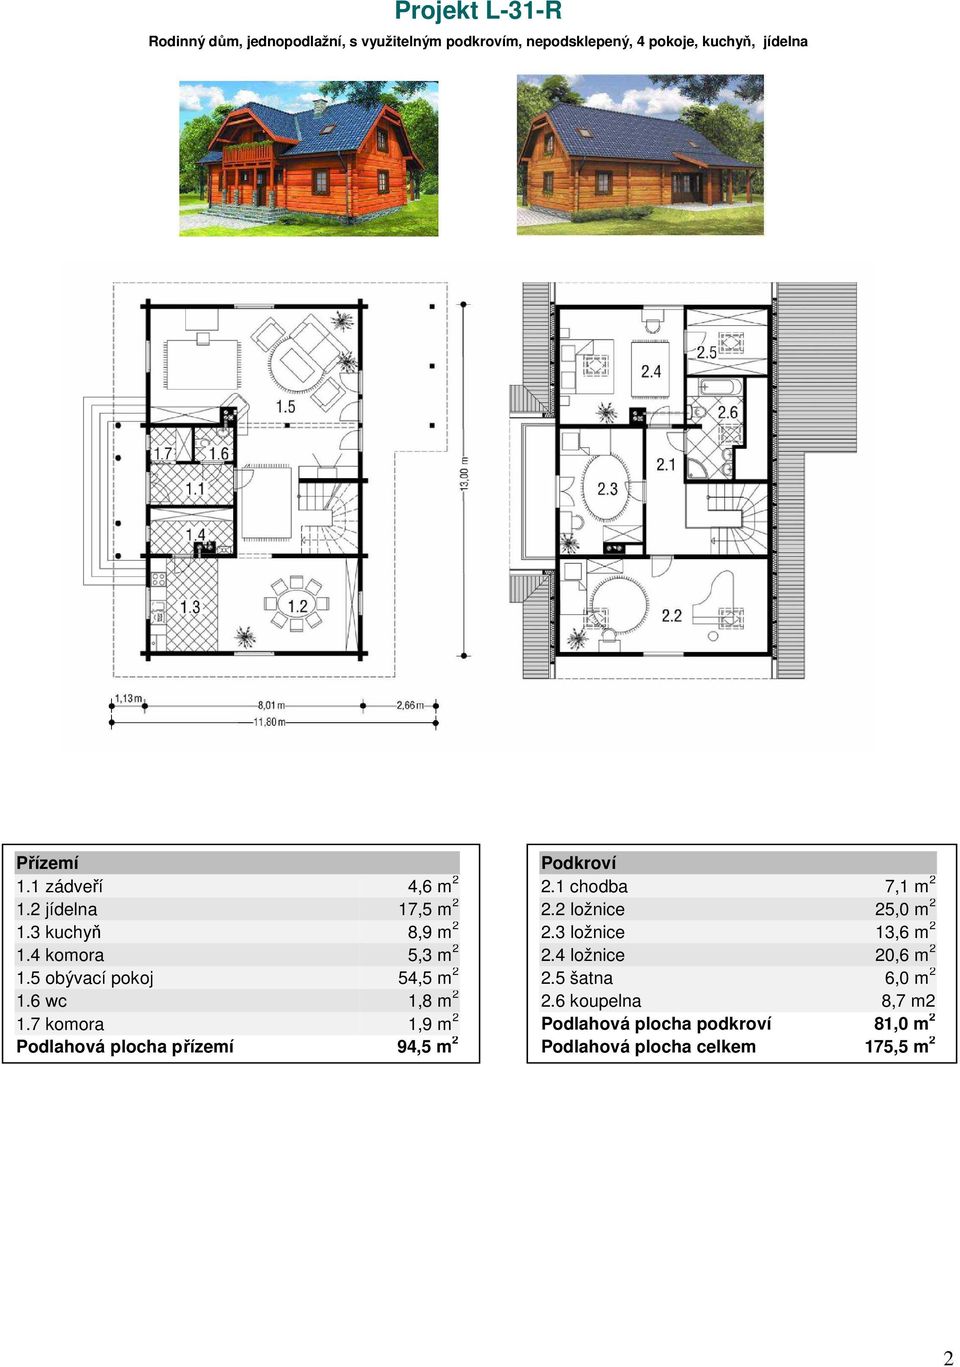 6 wc 1,8 m 2 1.7 komora 1,9 m 2 Podlahová plocha přízemí 94,5 m 2 2.1 chodba 7,1 m 2 2.2 ložnice 25,0 m 2 2.